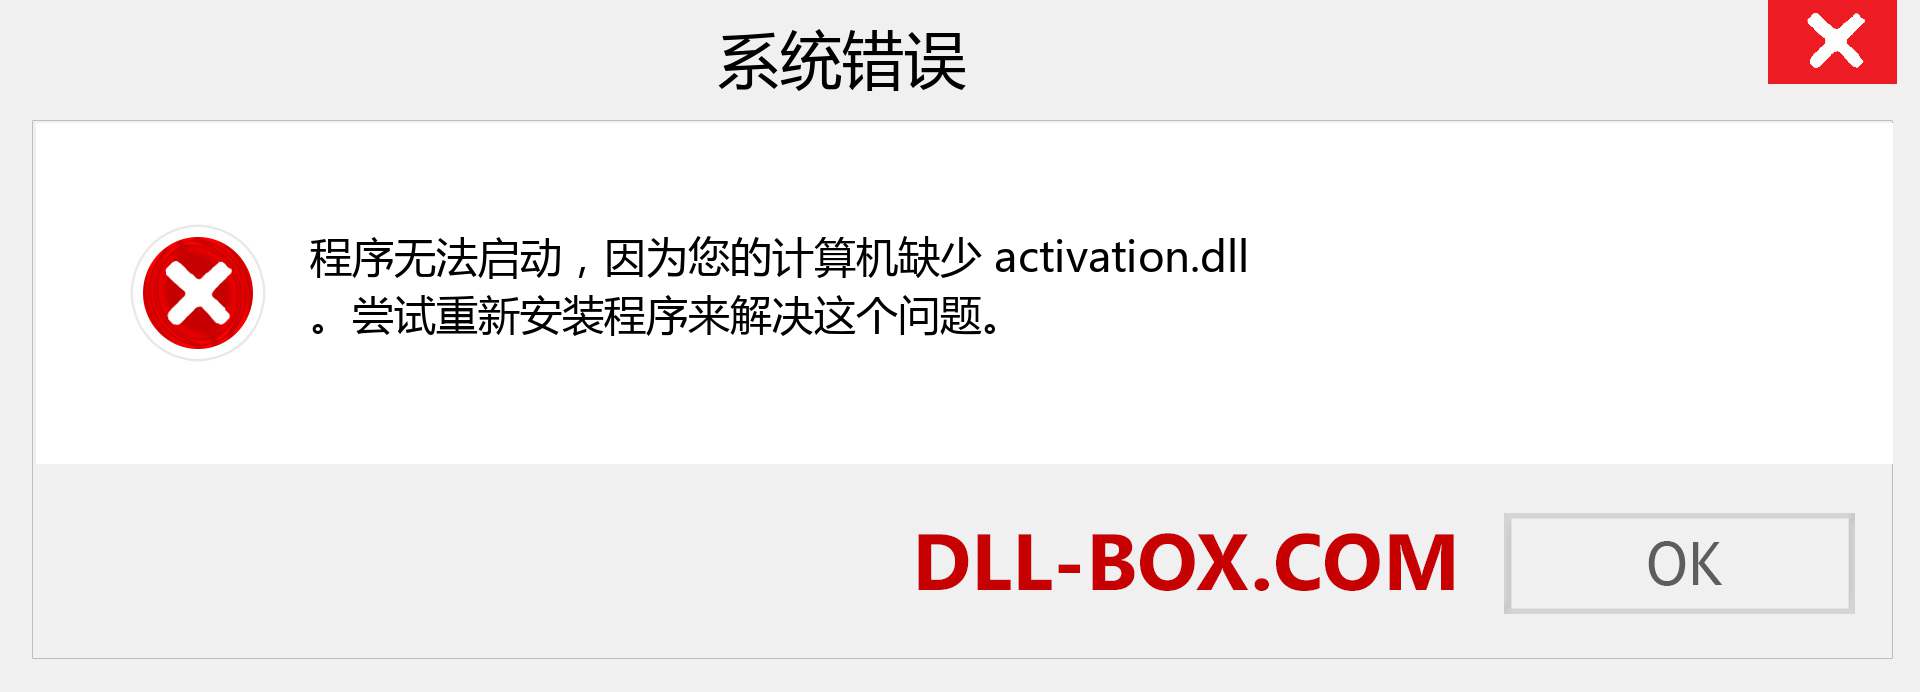 activation.dll 文件丢失？。 适用于 Windows 7、8、10 的下载 - 修复 Windows、照片、图像上的 activation dll 丢失错误